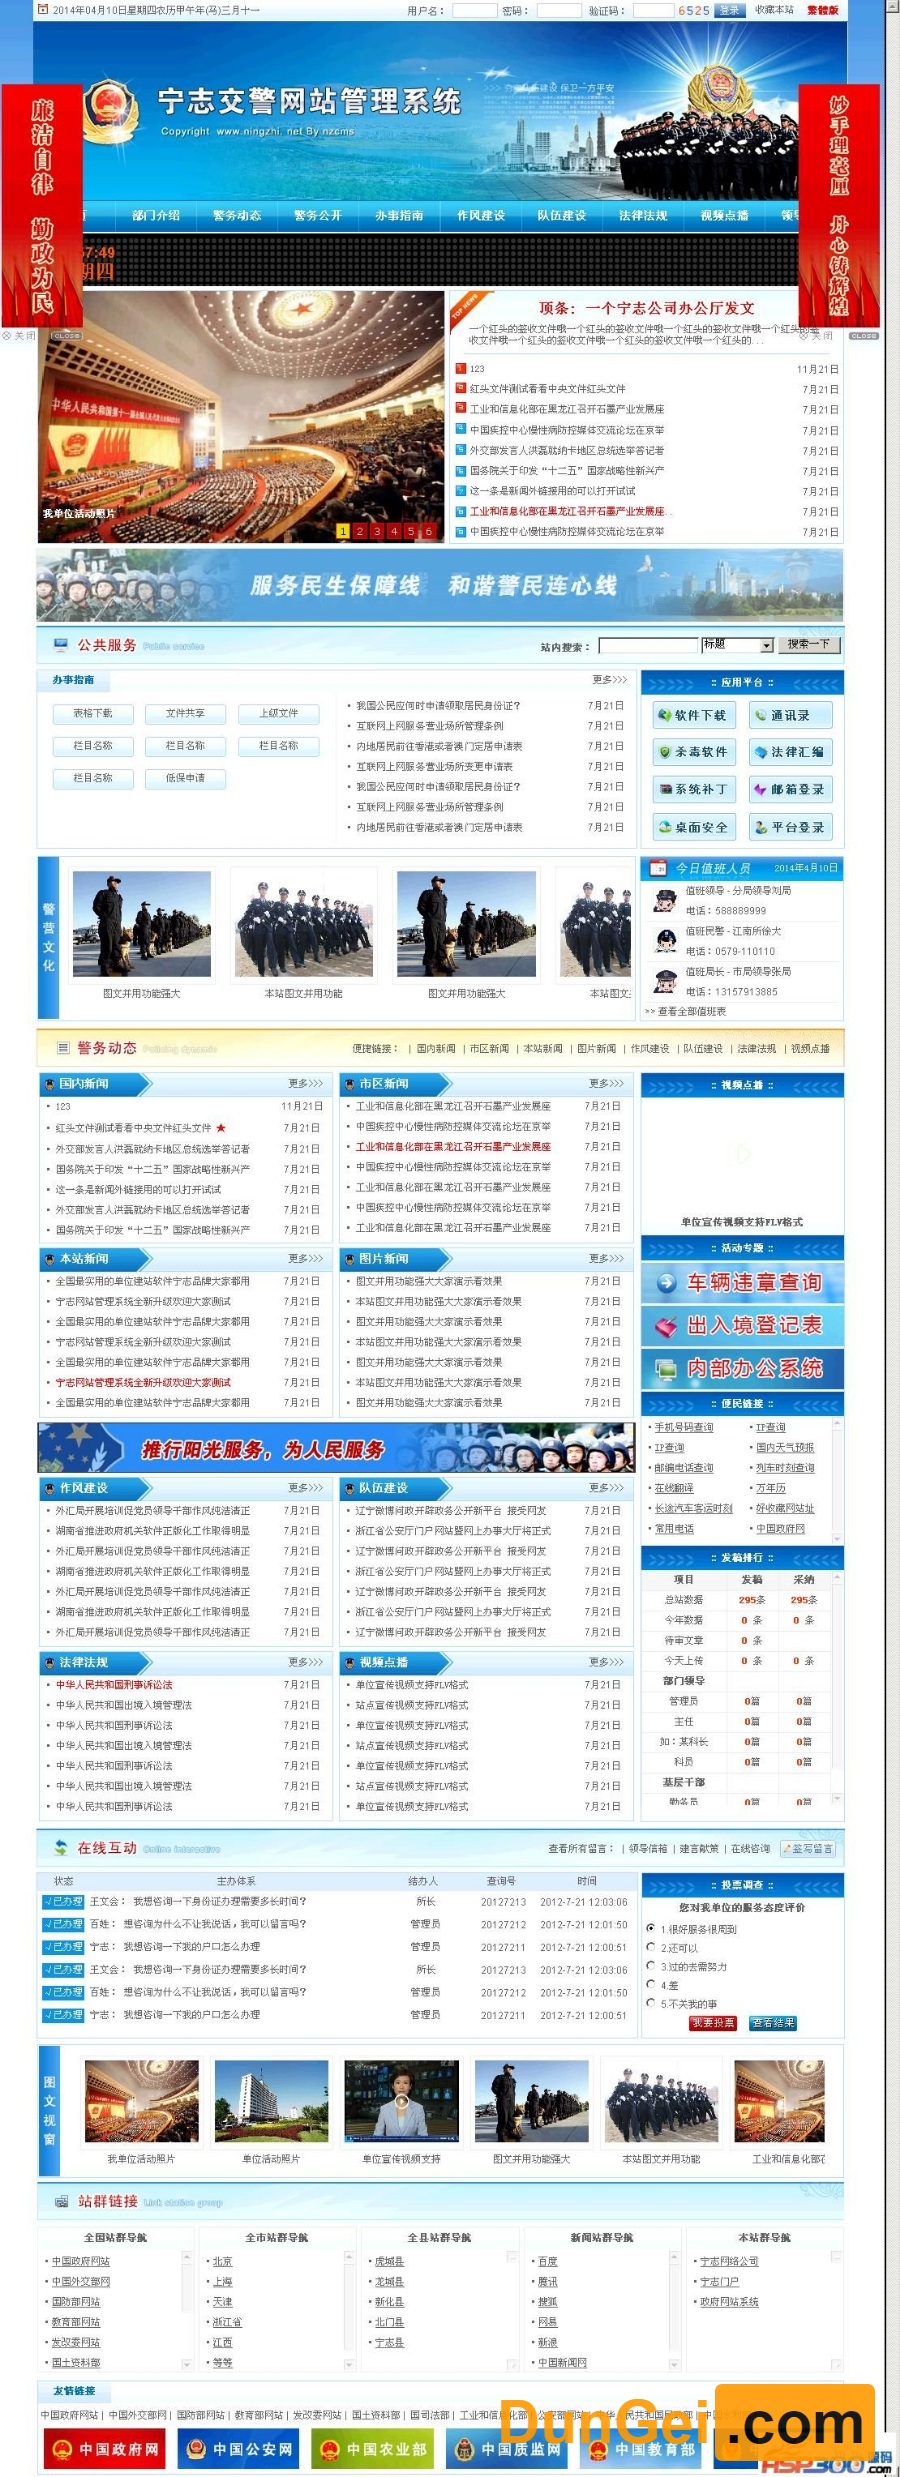 宁志交警队网站管理系统-蓝色模板 v19.9.20